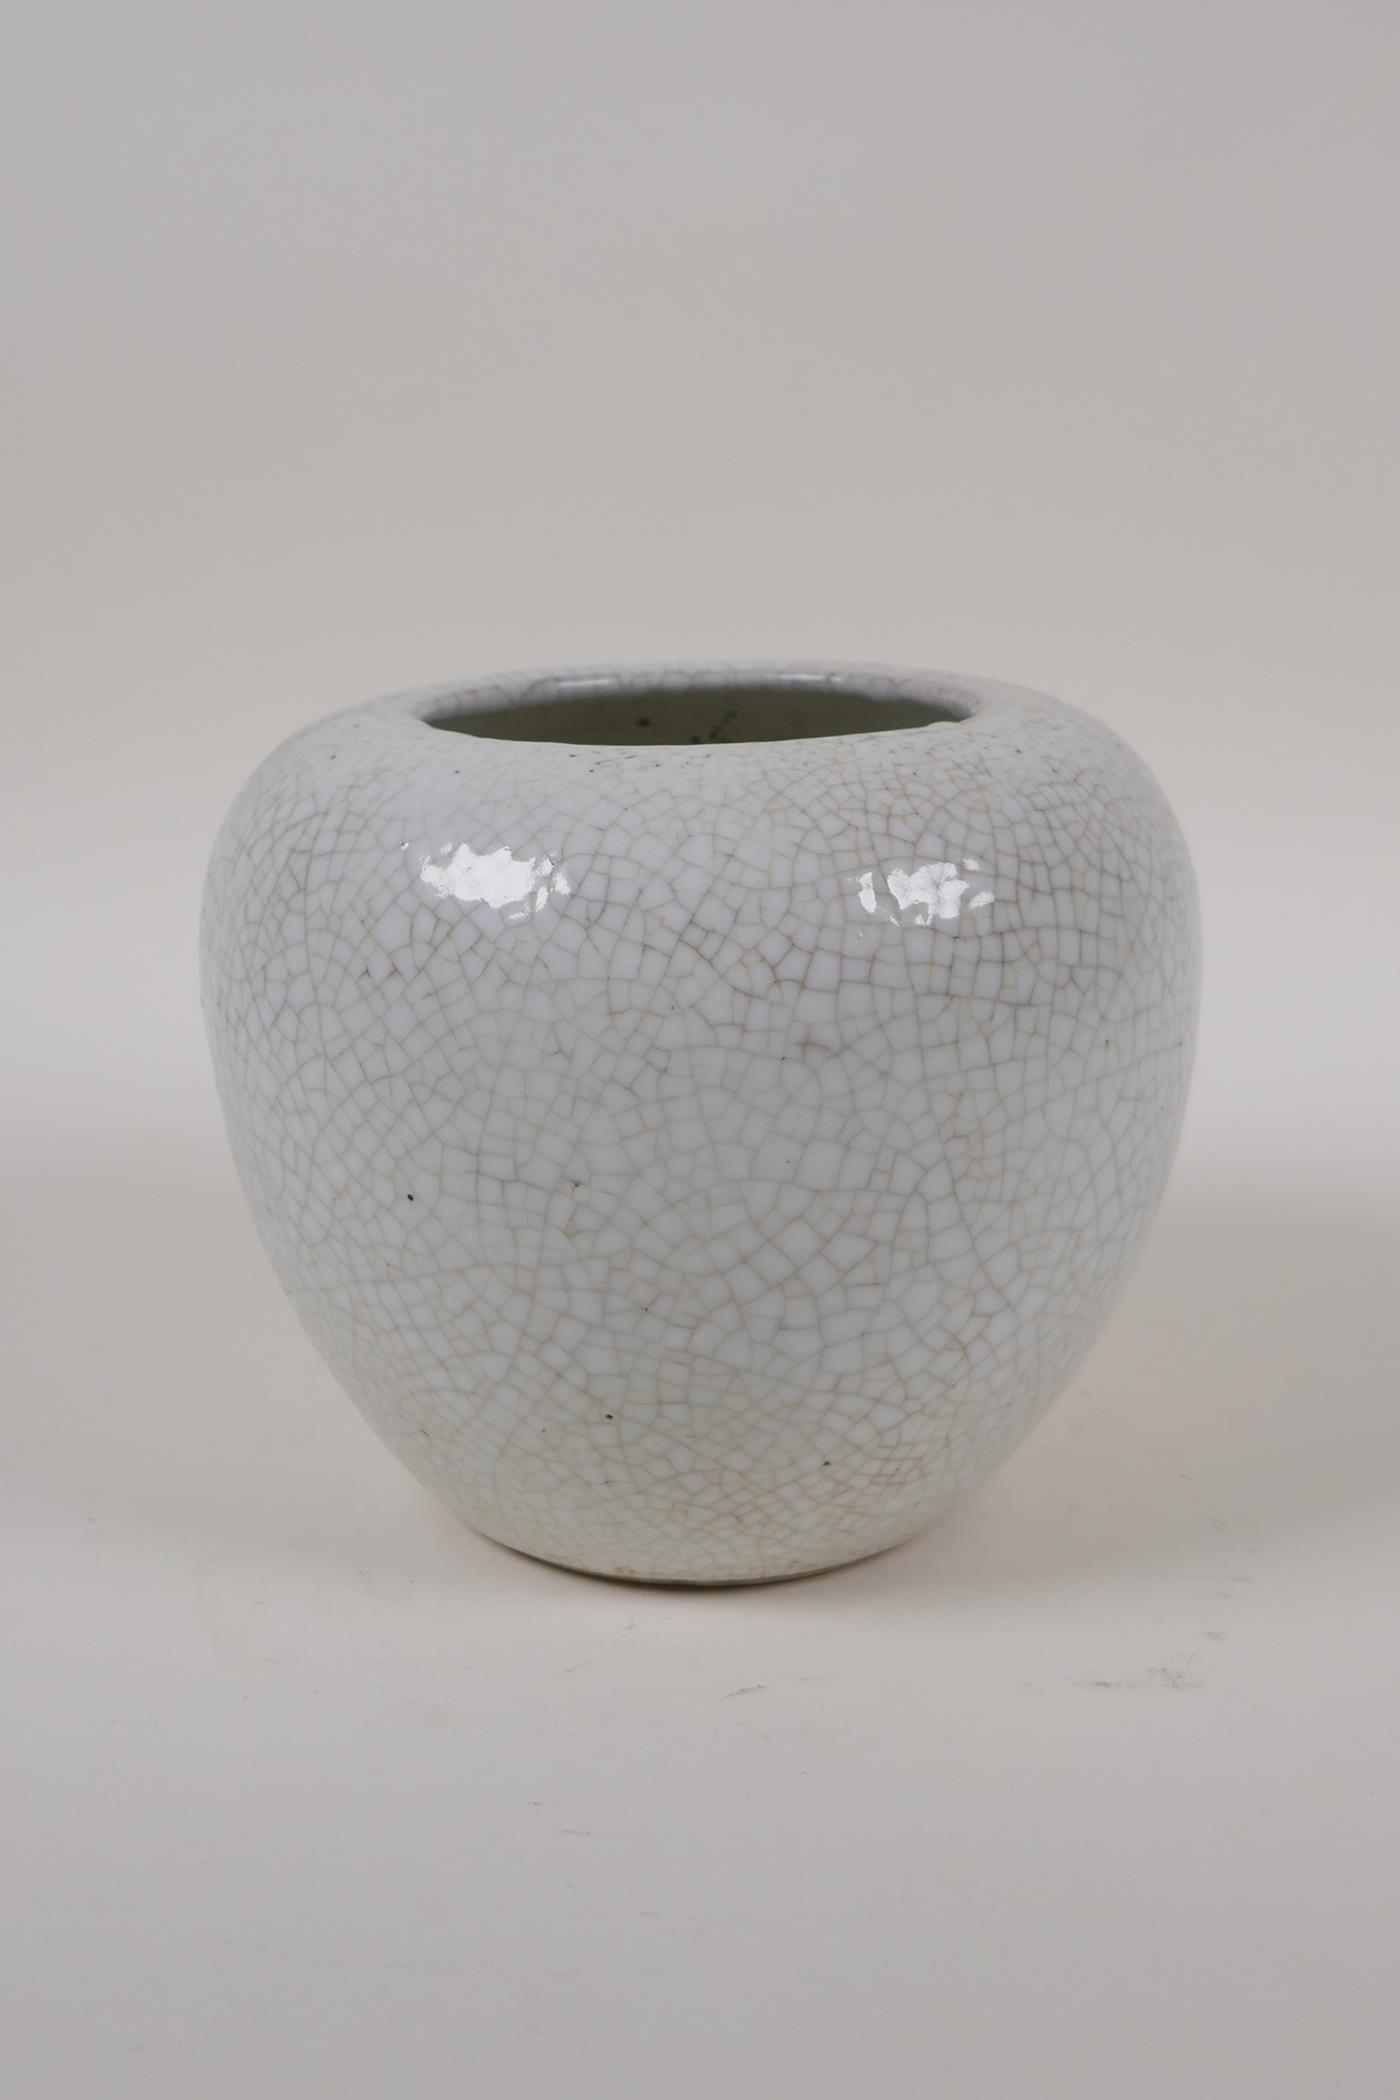 A Chinese cream crackleglazed porcelain jar, 5" high - Image 3 of 4